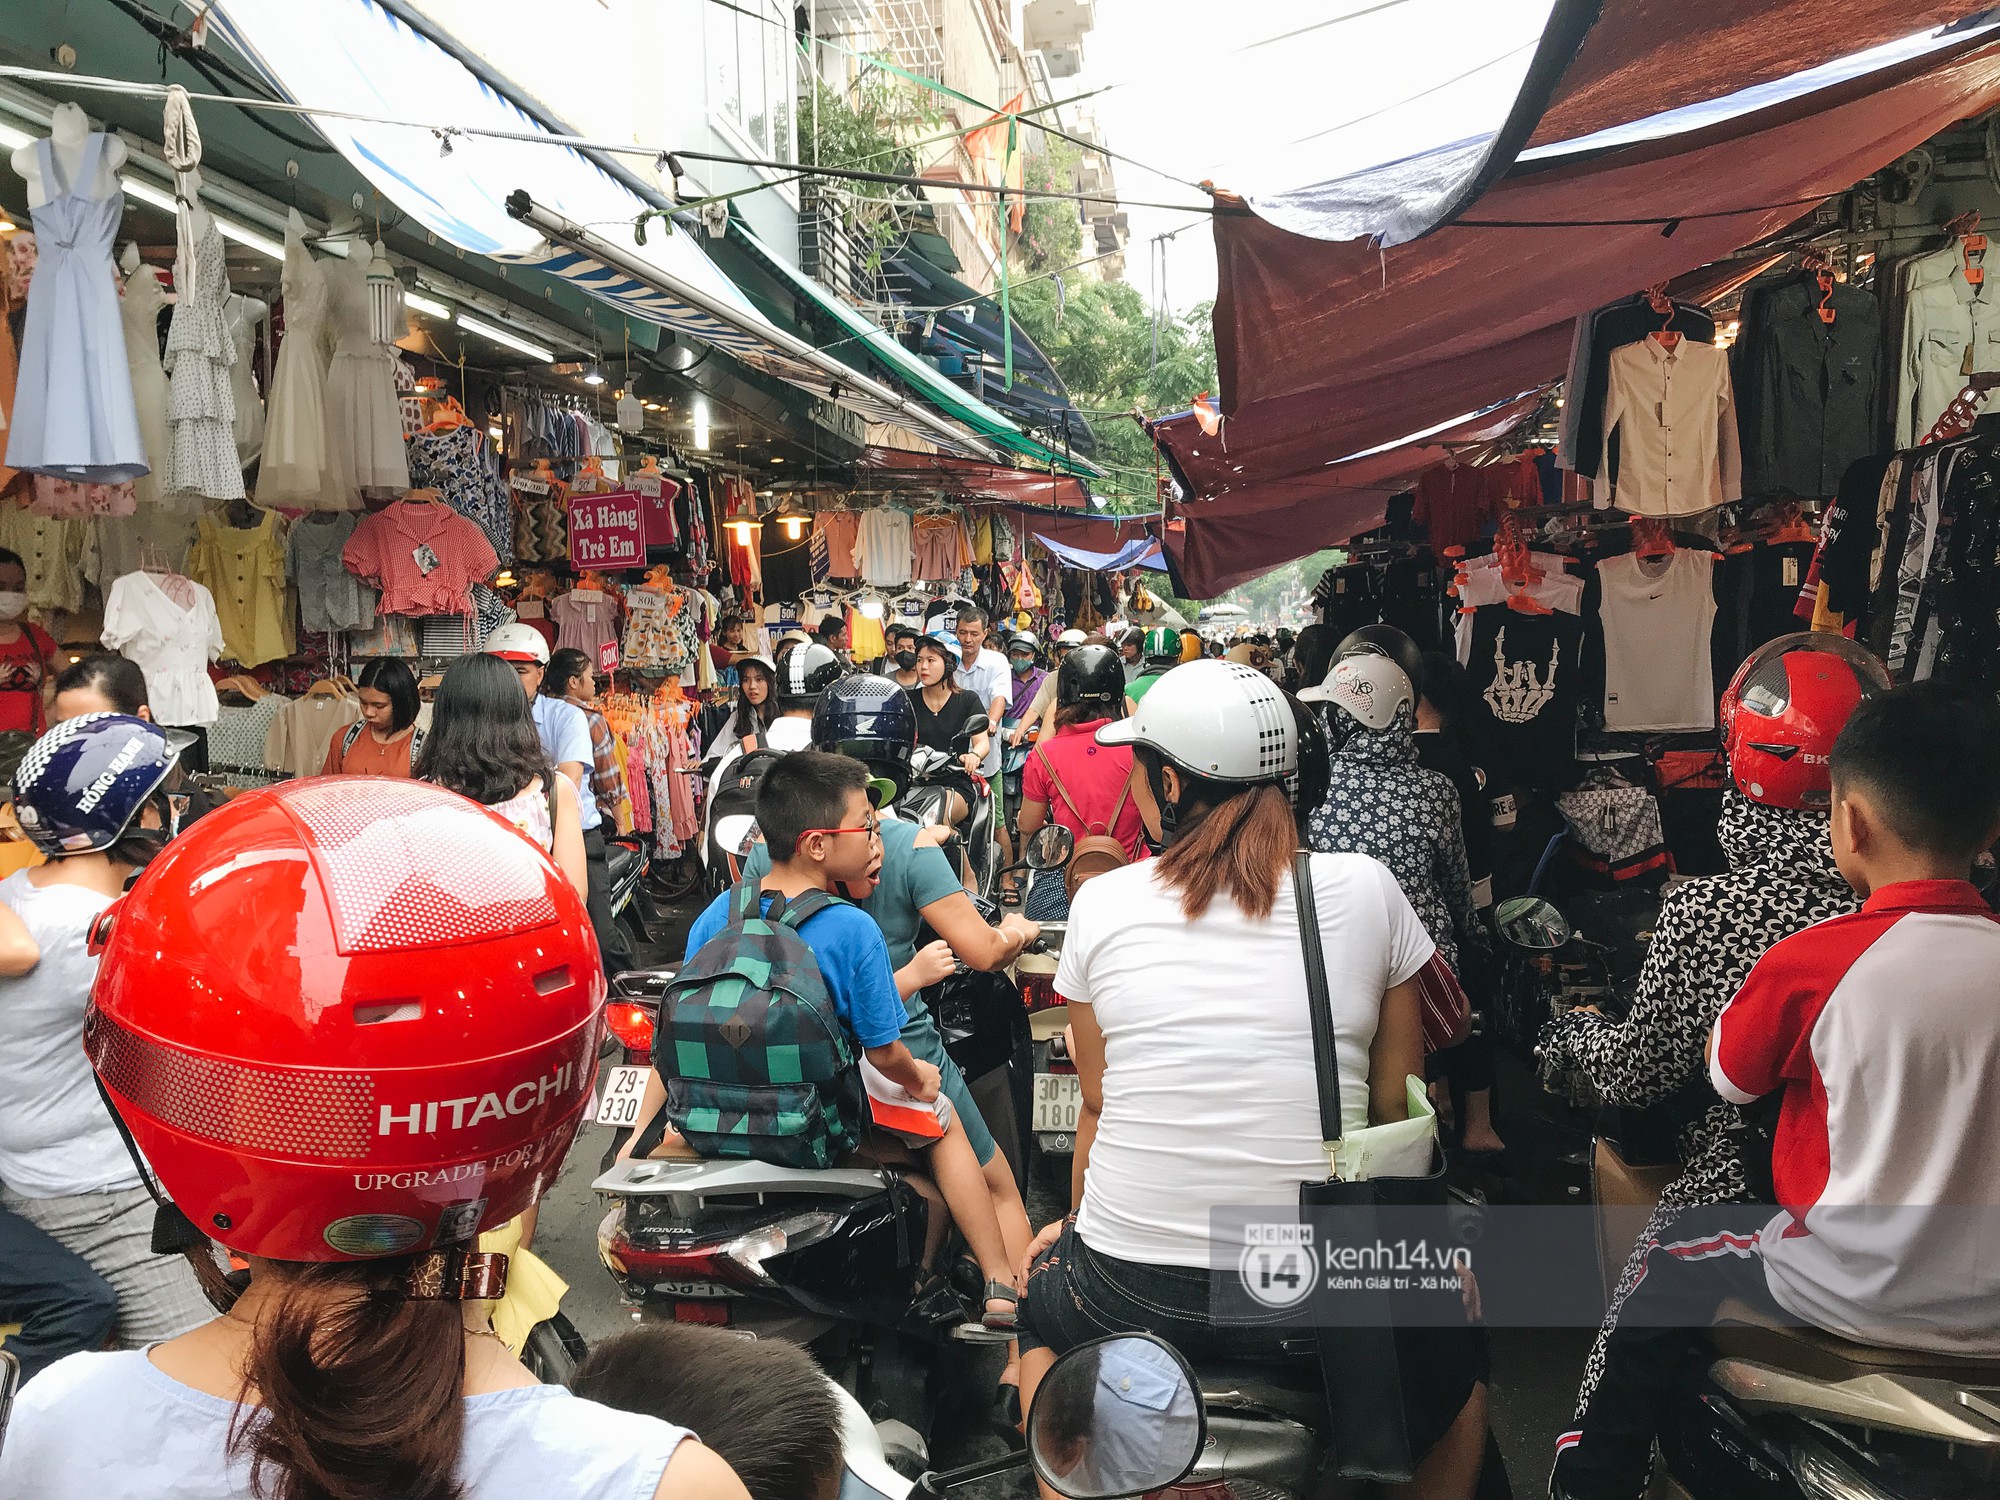 Khám phá chợ Nhà Xanh nổi tiếng nhất nhì giới sinh viên Hà Nội: Đi 5 bước 15 tiếng chửi, xem đồ mà không mua coi chừng ăn đánh nghe chưa! - Ảnh 5.